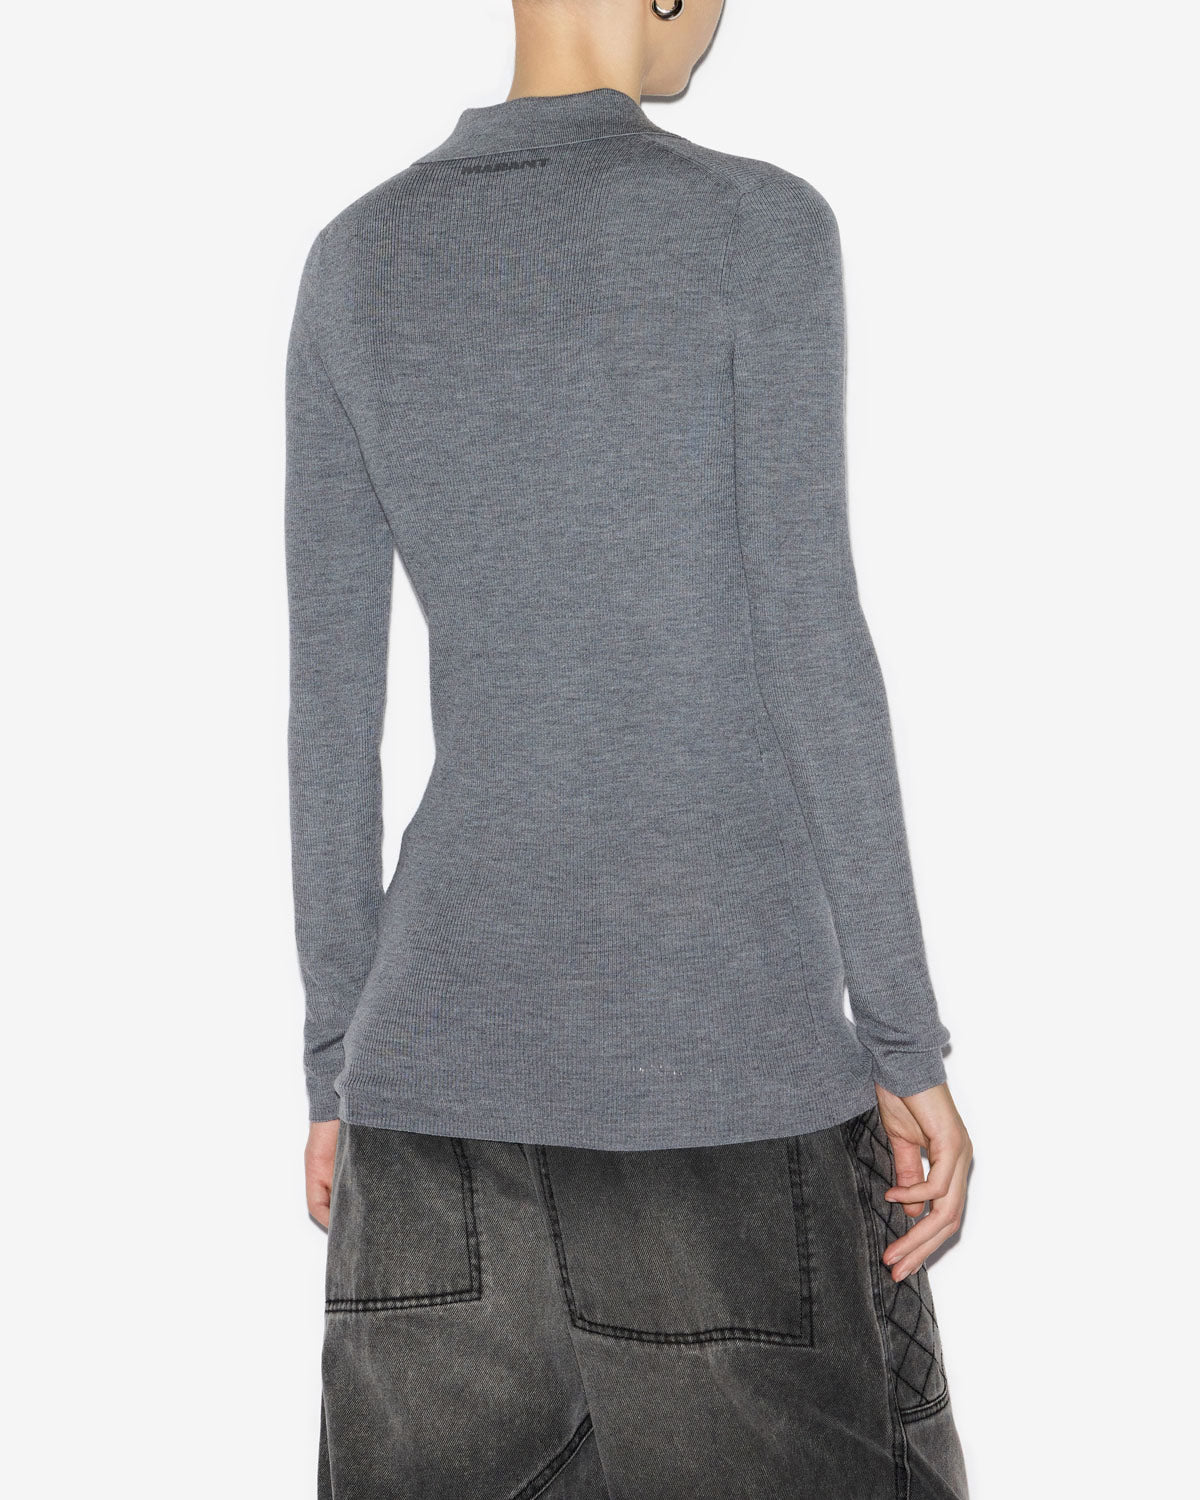 Pullover elvira Woman Medium gray 3